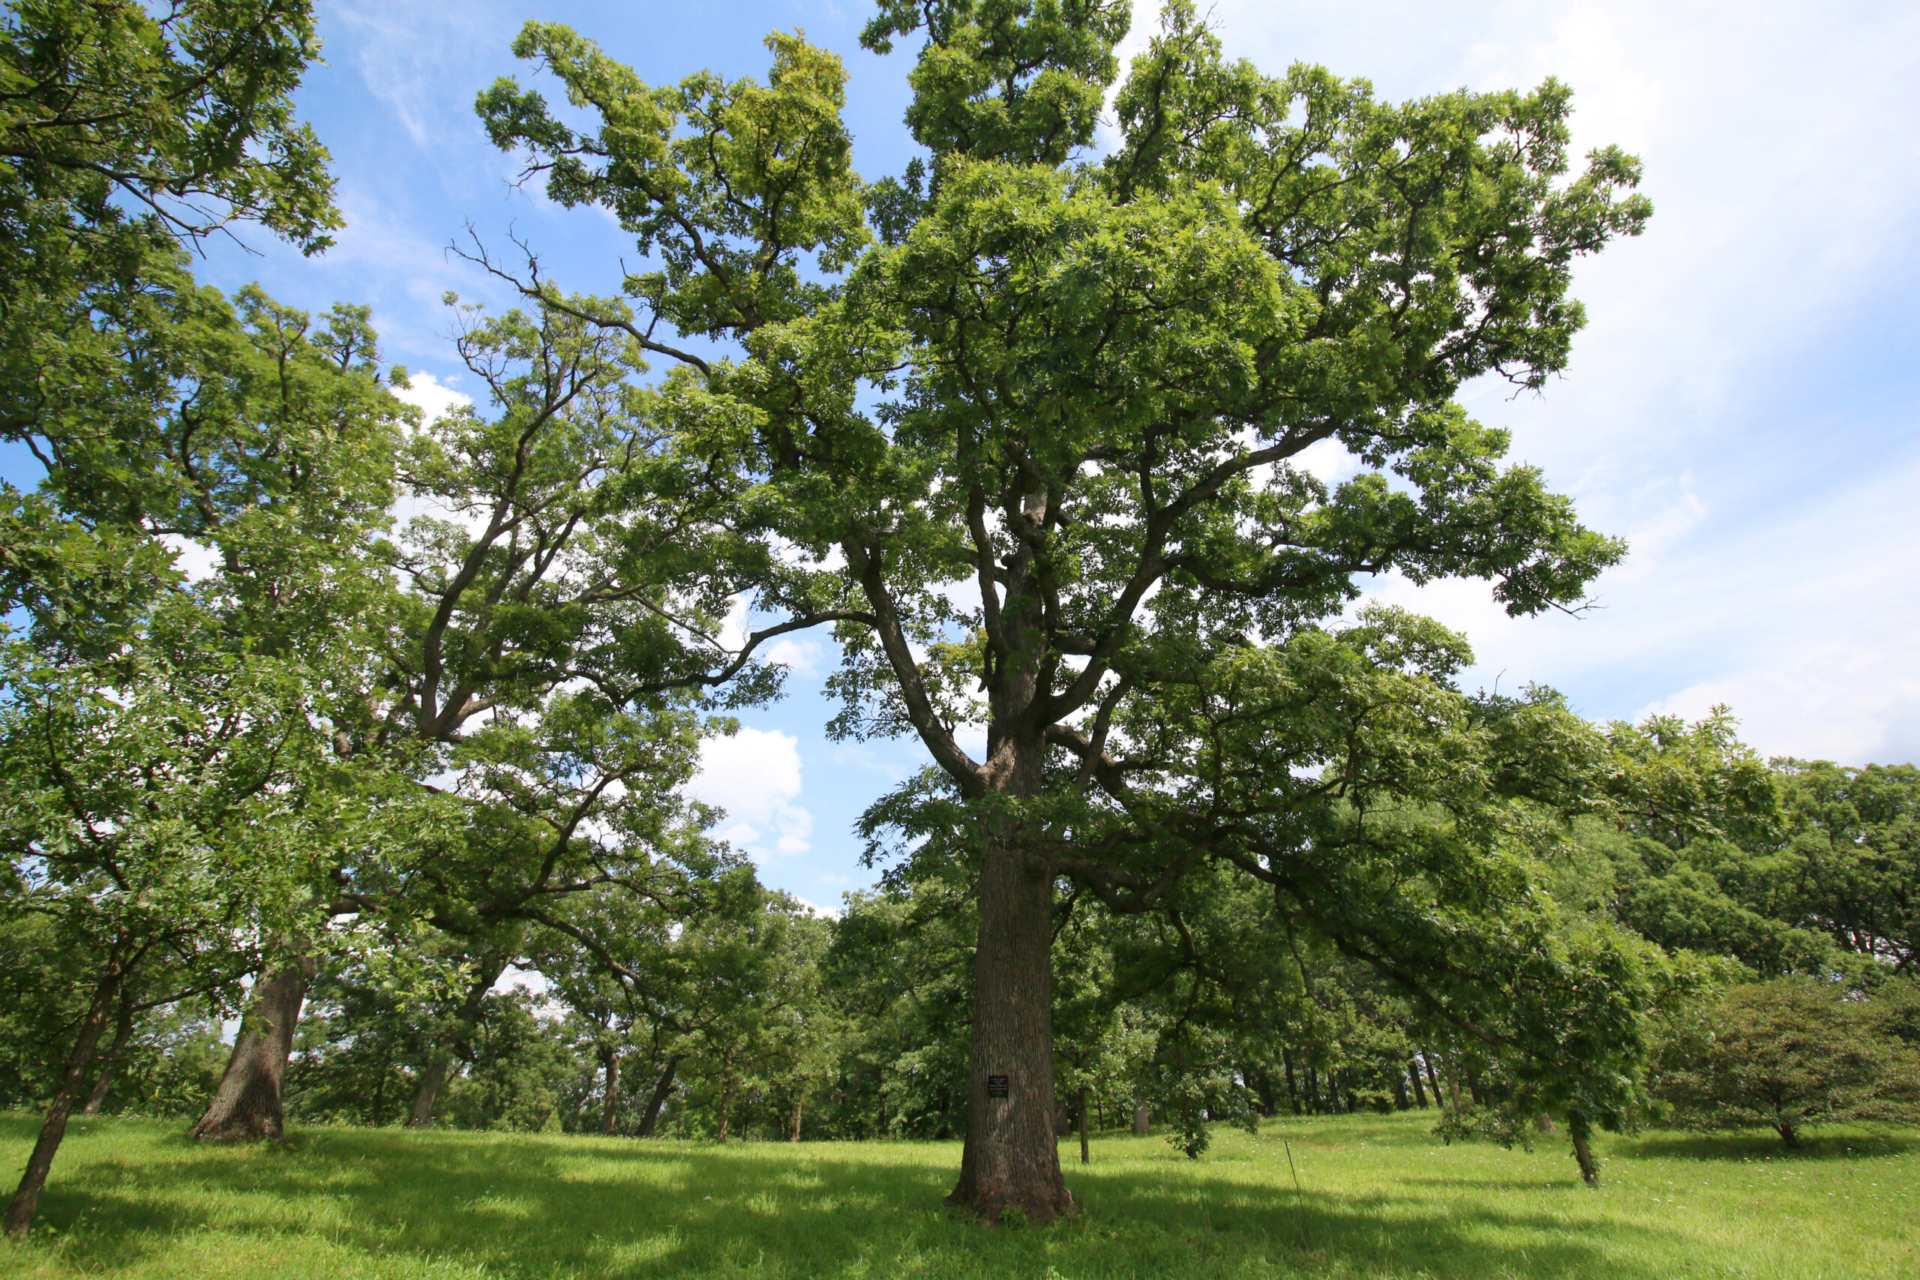 An oak tree in the summer